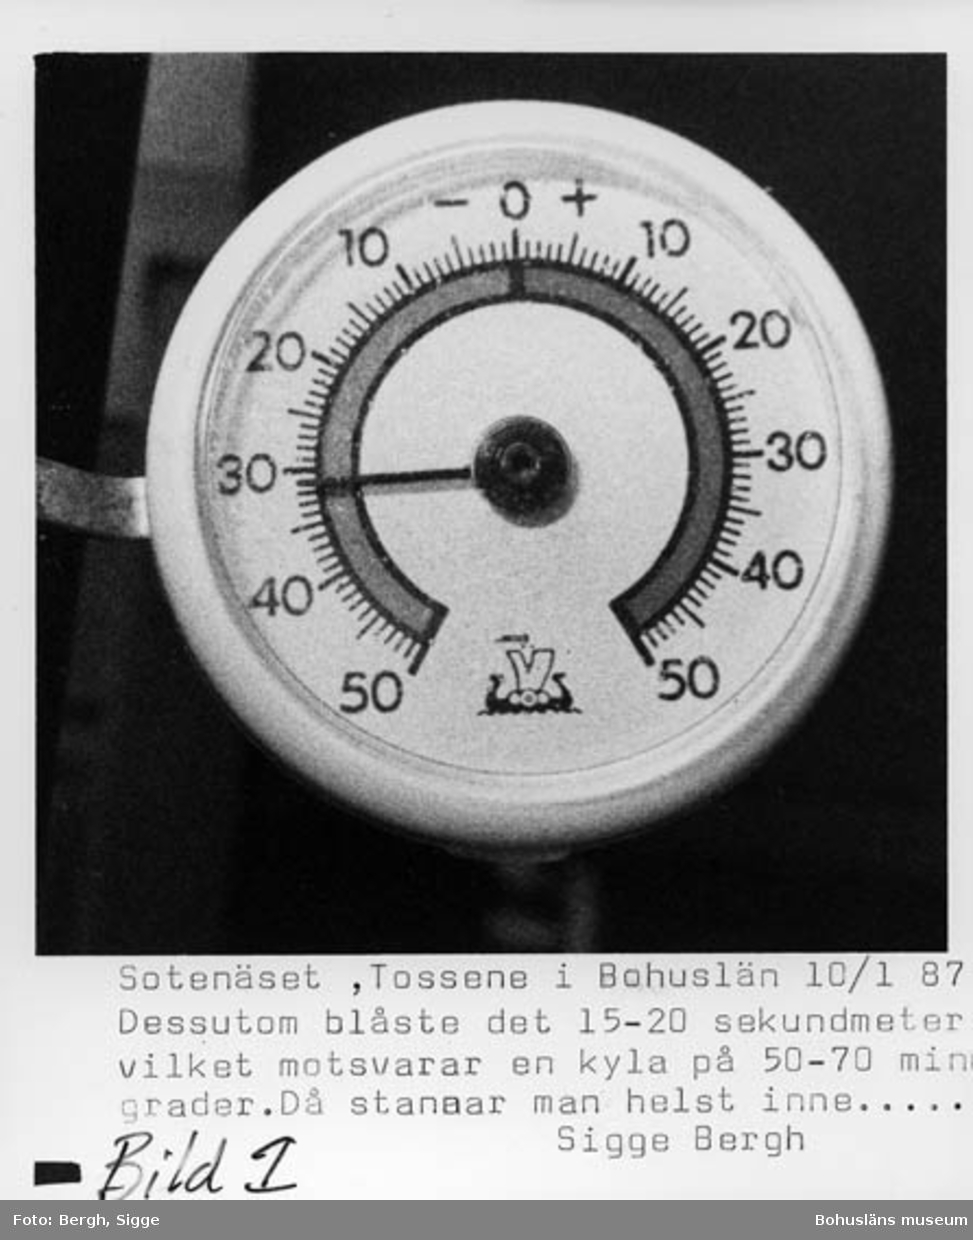 Enligt text på fotot: "Sotenäset, Tossene i Bohuslän 10/1 87. Dessutom blåste det 15-20 sekundmeter vilket motsvarar en kyla på 50-70 minusgrader. Då stannar man helst inne...".